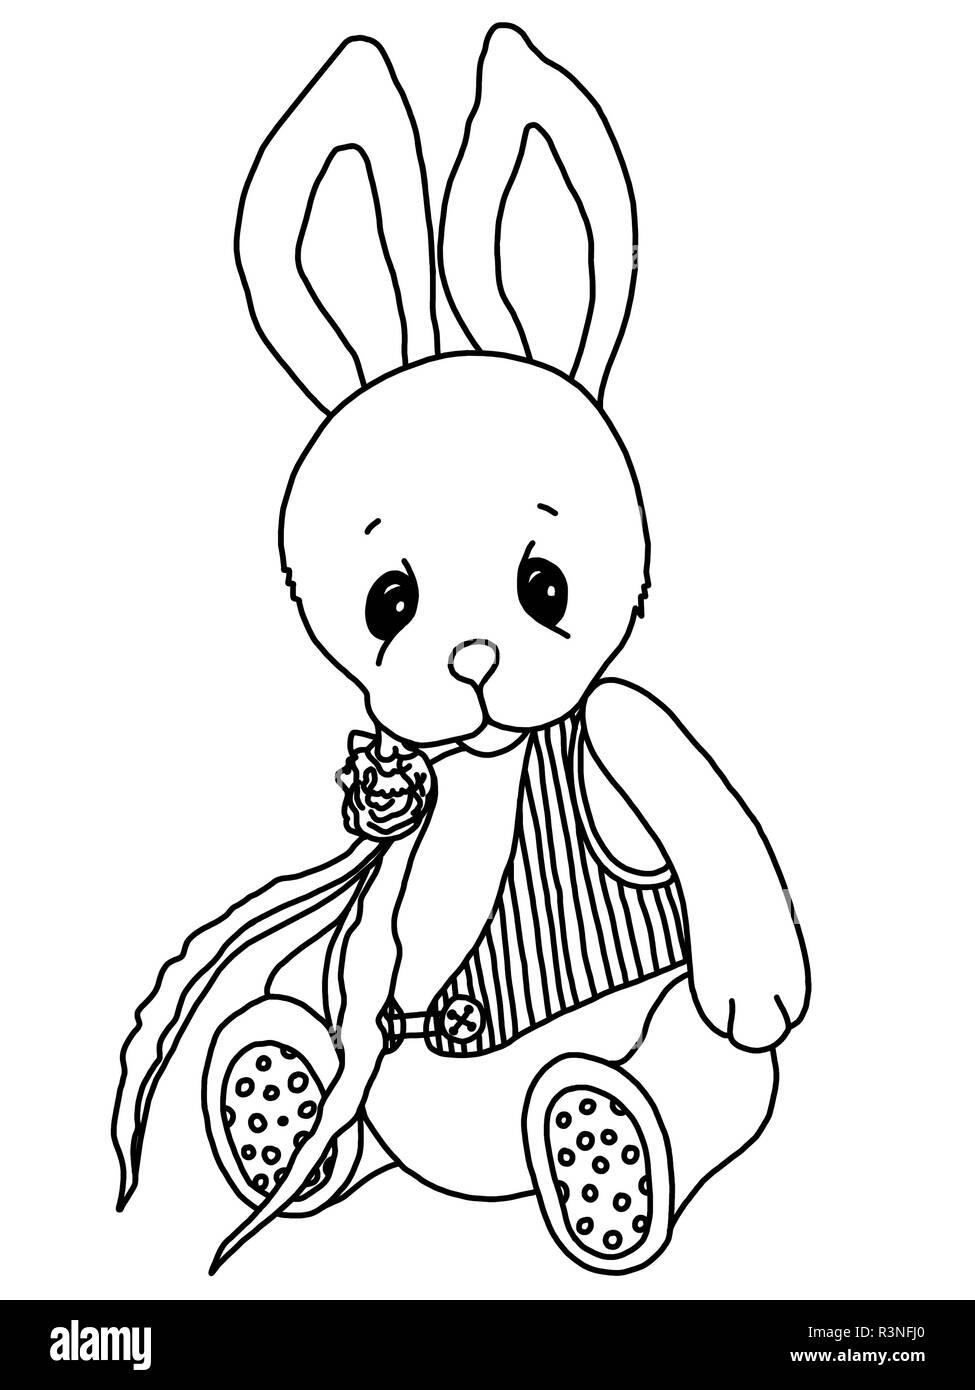 Schwarze Und Weisse Farbung An Teddy Kaninchen Ein Spielzeug Gezeichnet Von Hand Schwarzer Outline Traurig Plusch Weiche Tragen Tinte Stockfotografie Alamy